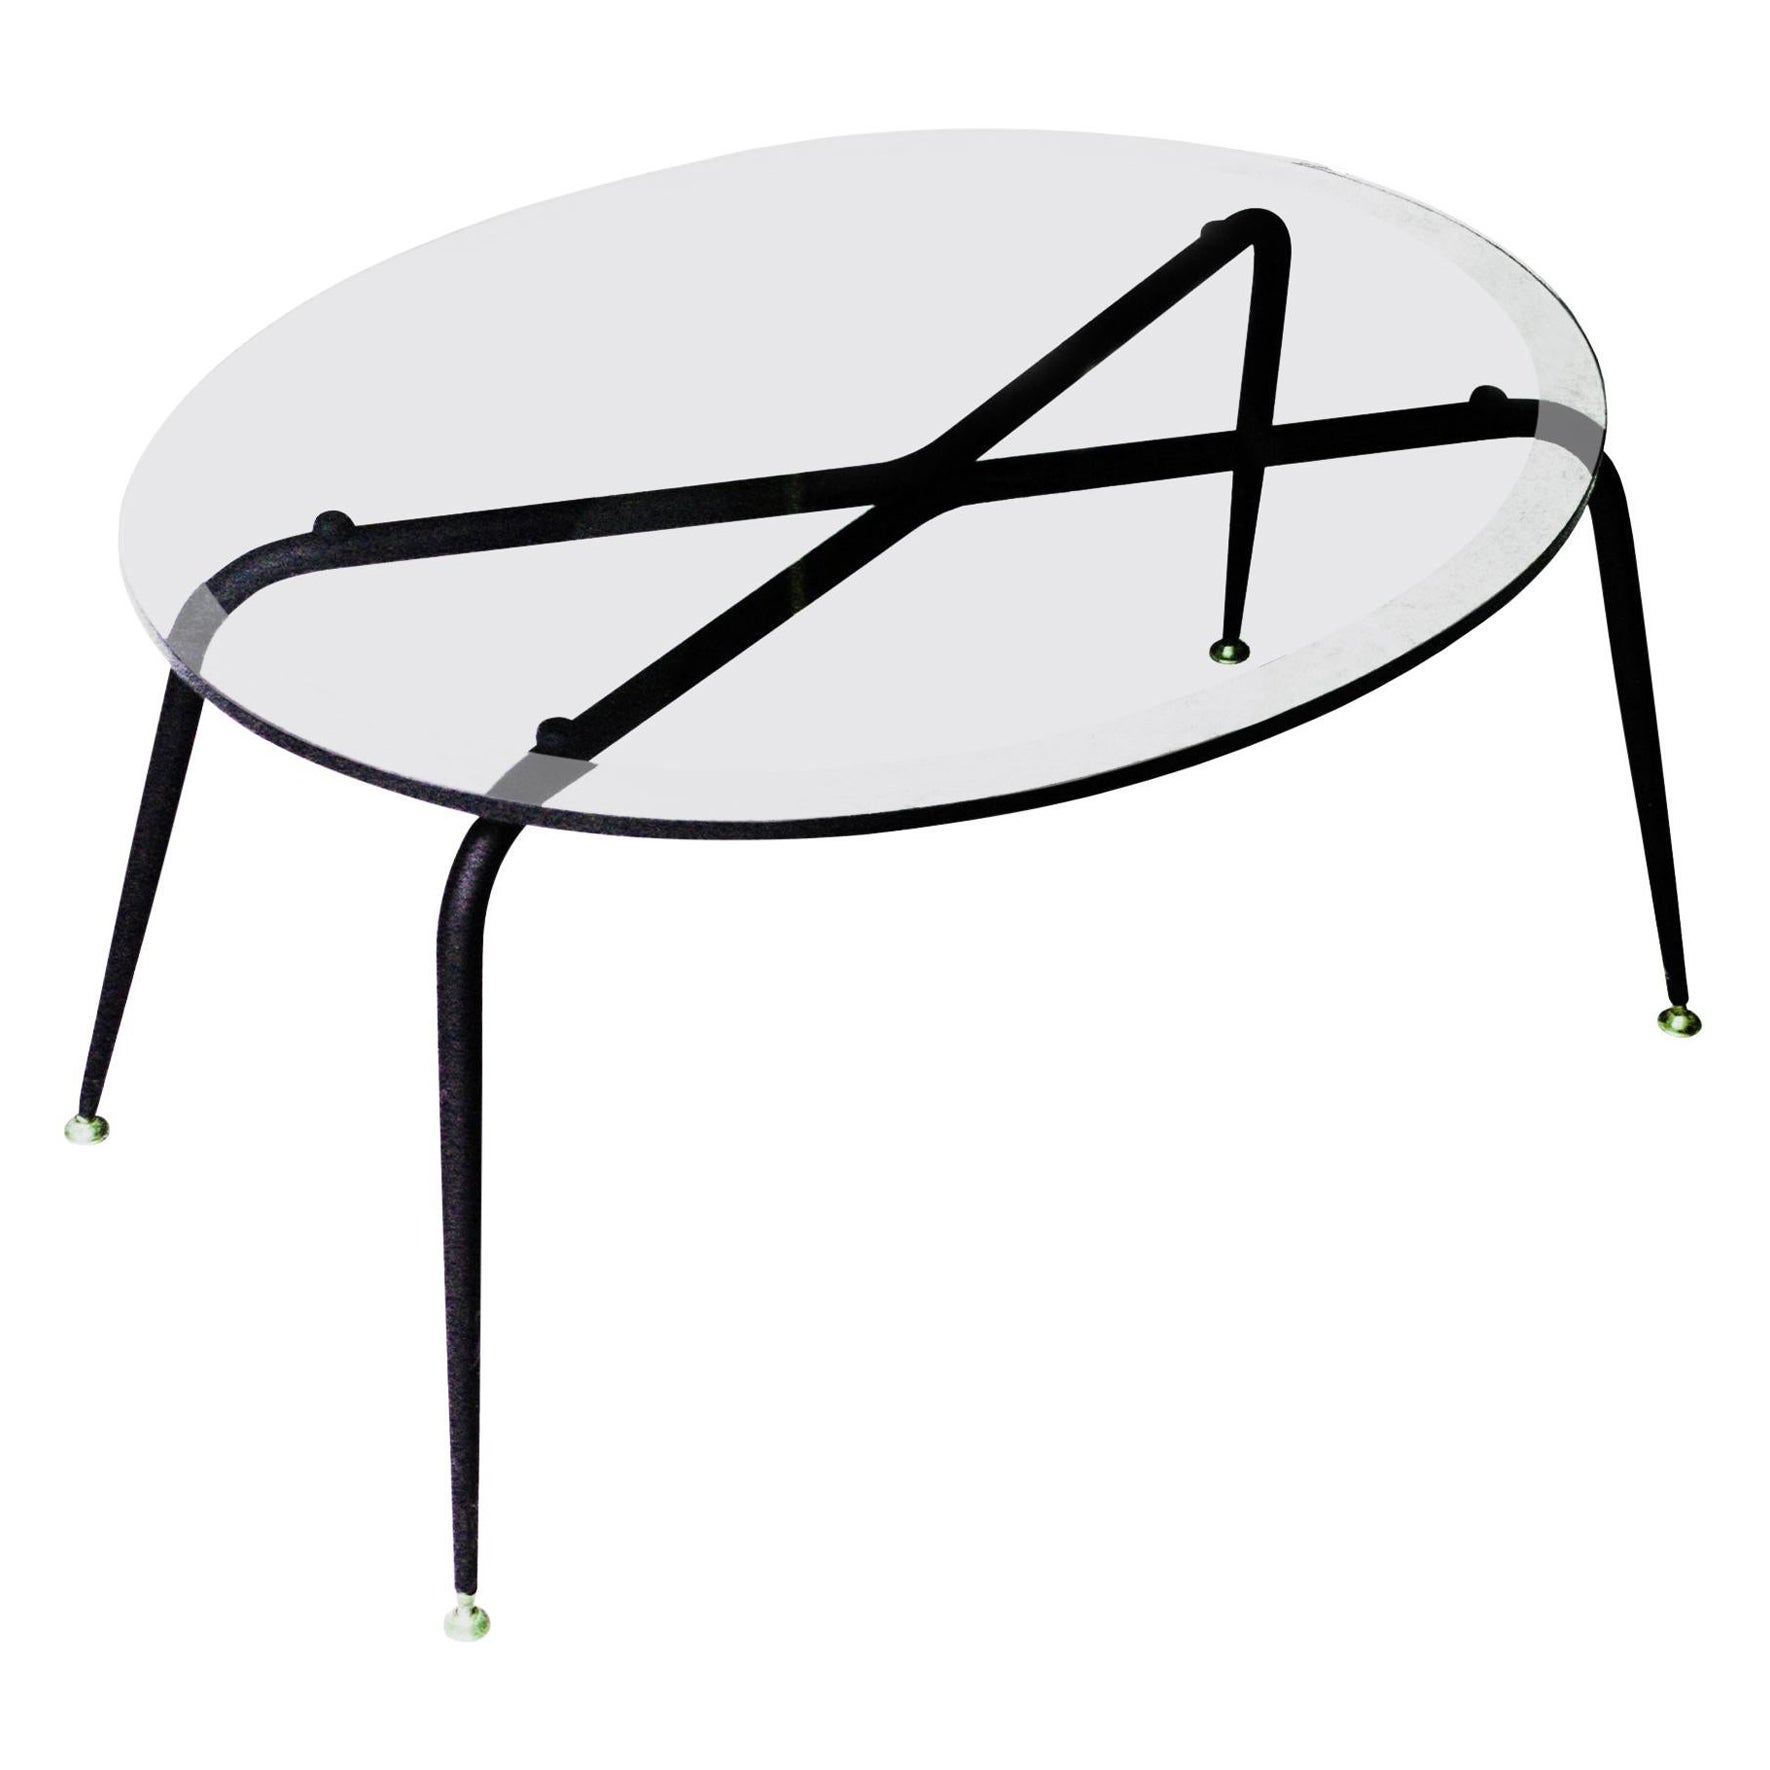 Table basse avec plateau ovale en verre et base en métal laqué noir avec supports pivotants à pad en laiton.